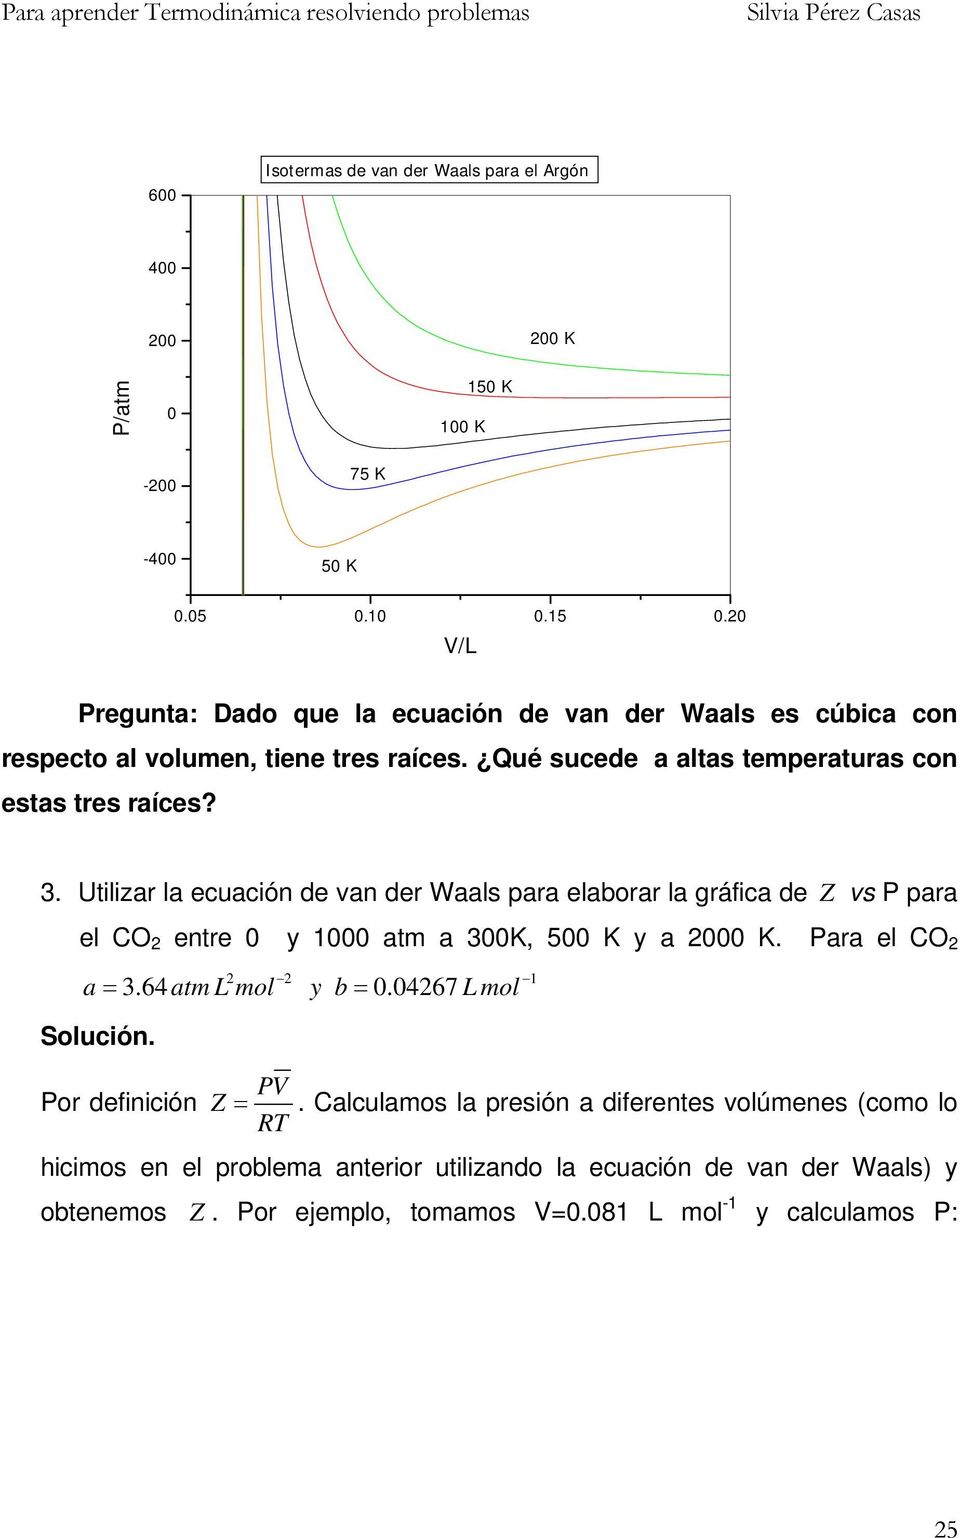 . Utilizar la euaión de van der Waals para elaborar la gráfia de Z vs para el CO entre 0 y 1000 atm a 00K, 500 K y a 000 K. ara el CO a =.64atm mol y b = 0.